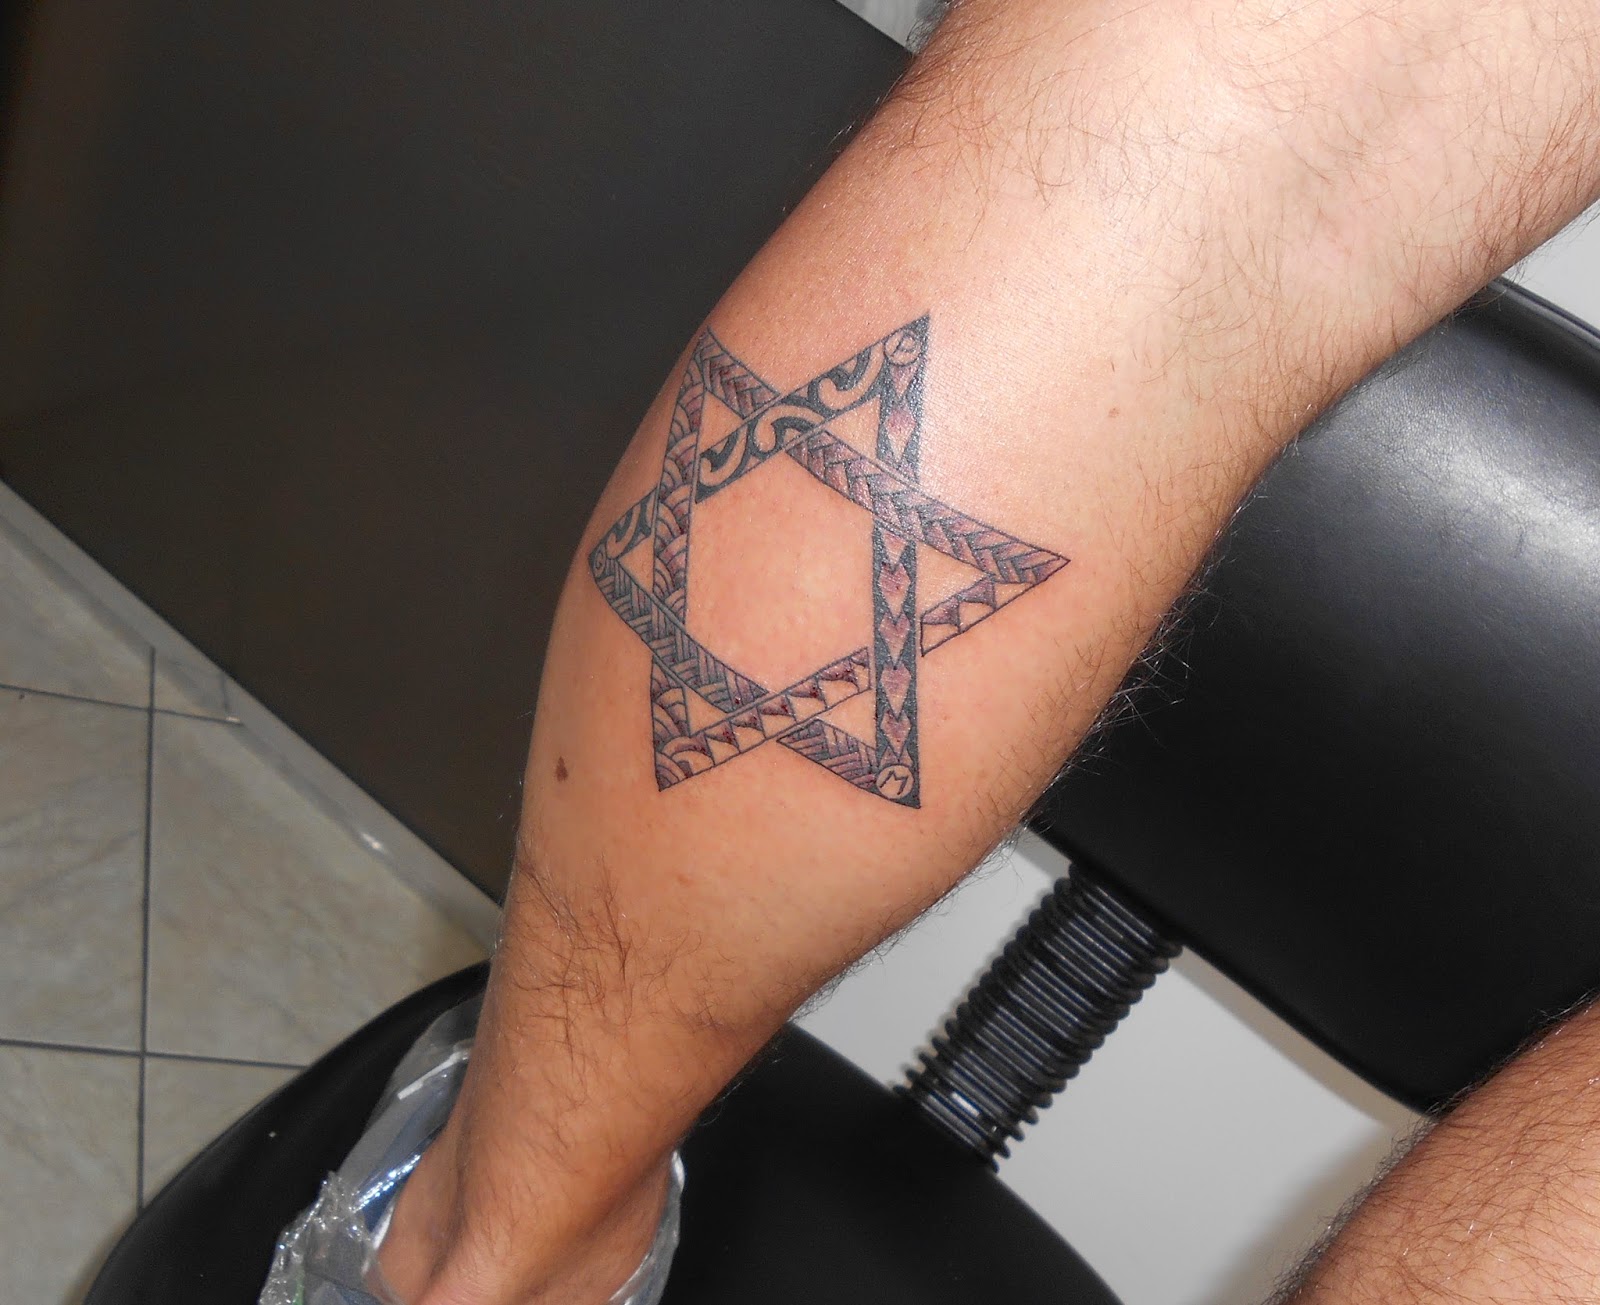 Estrela de Davi Tattoo Significado Fotos e Imagens Cliquetando